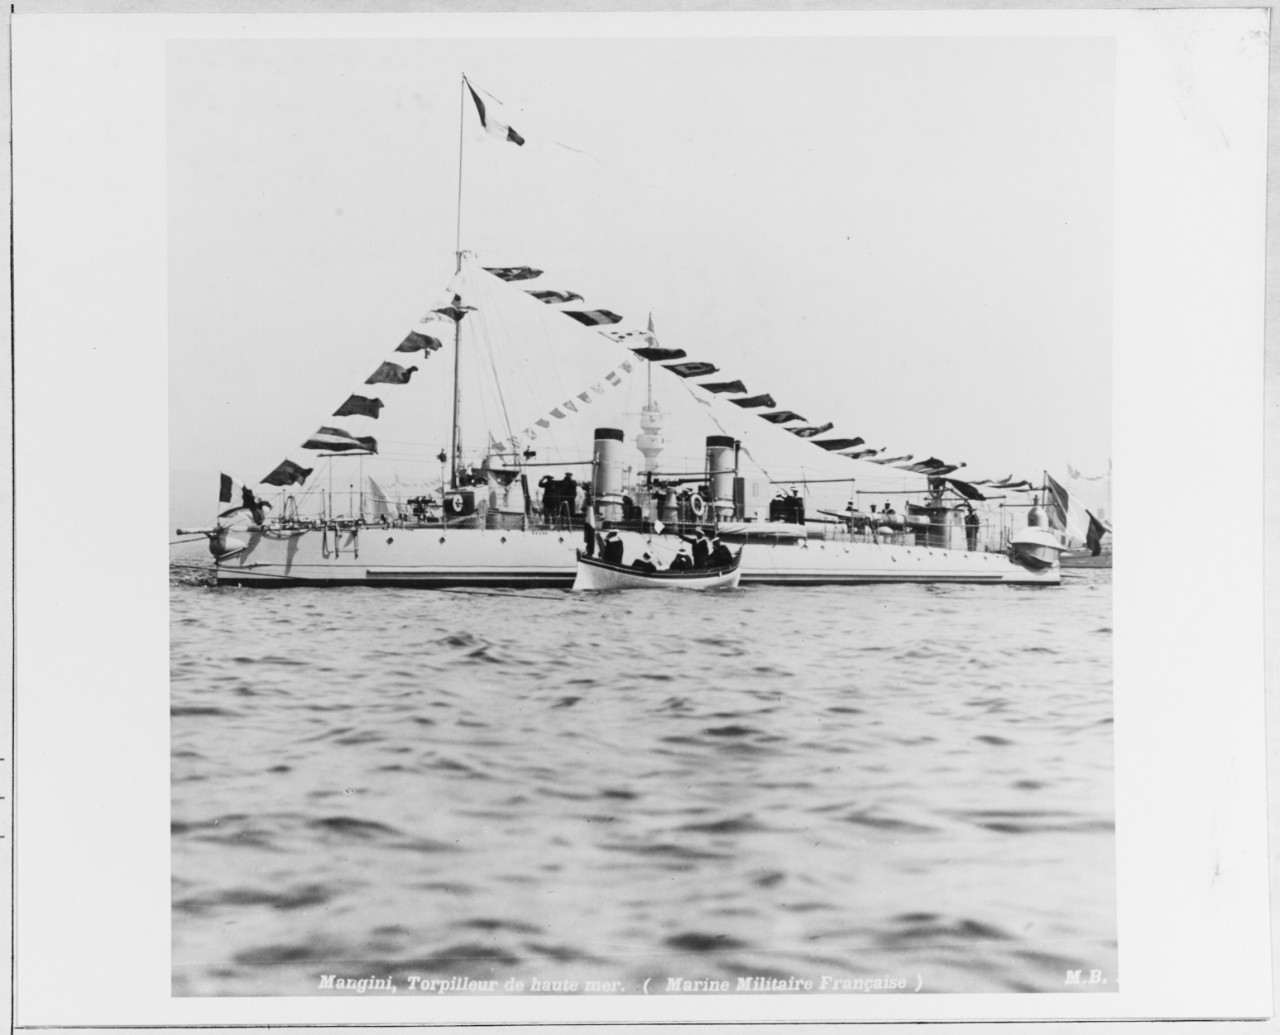 MANGINI (French torpedo boat, 1896)